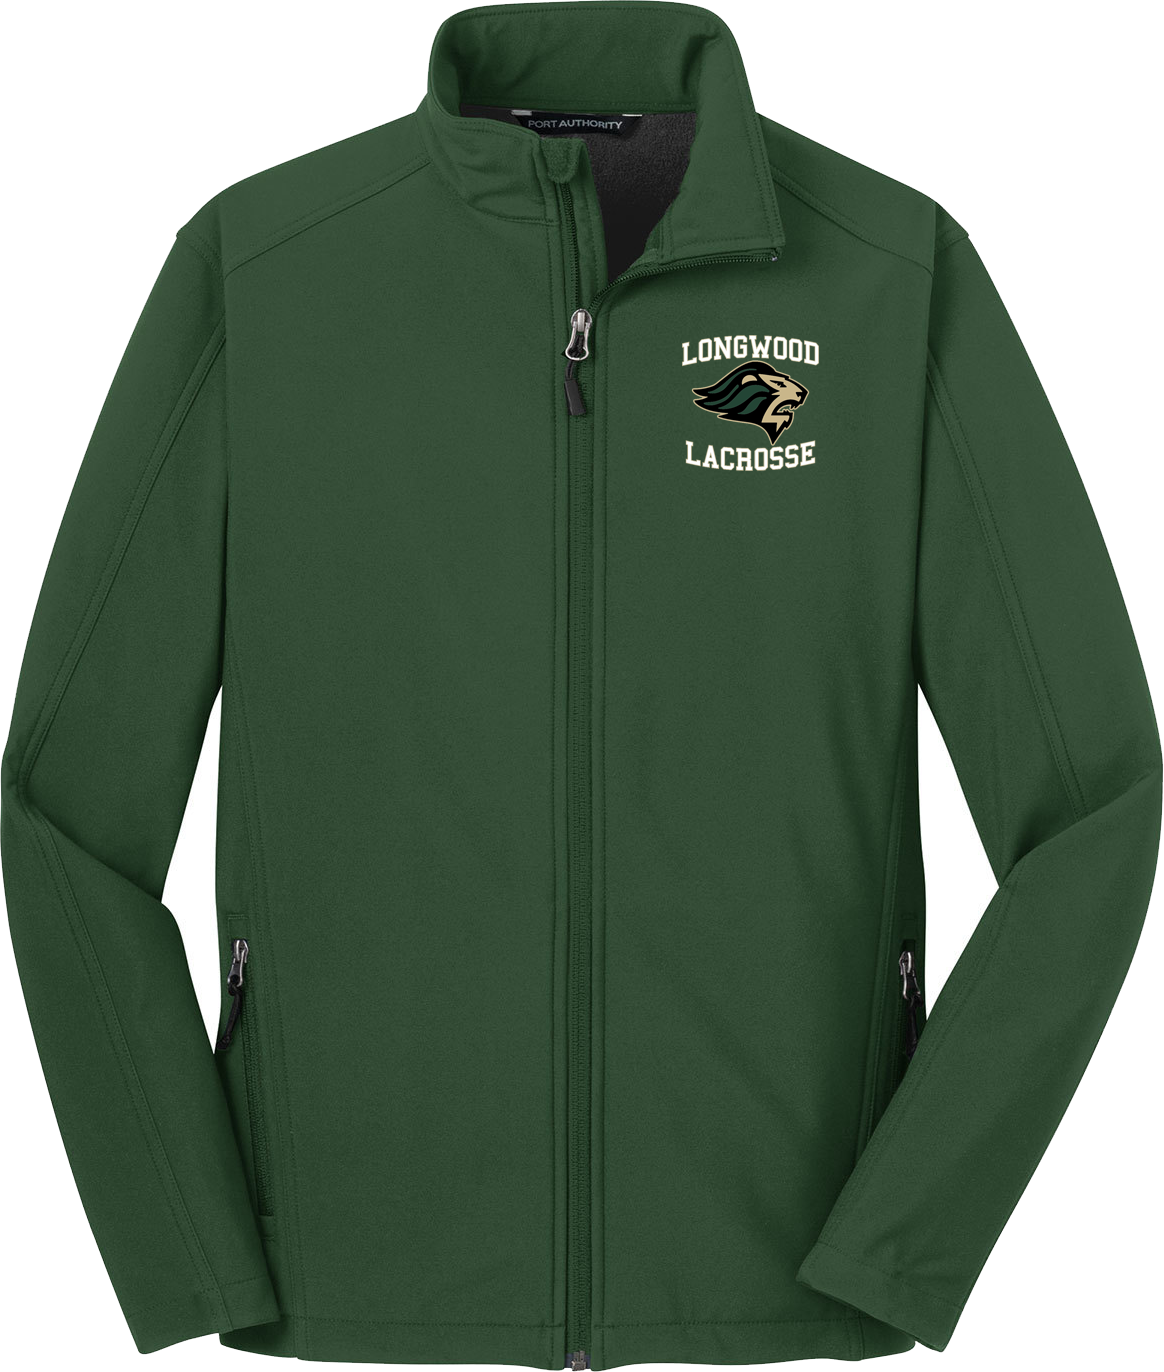 Longwood Lacrosse Green Soft Shell Jacket